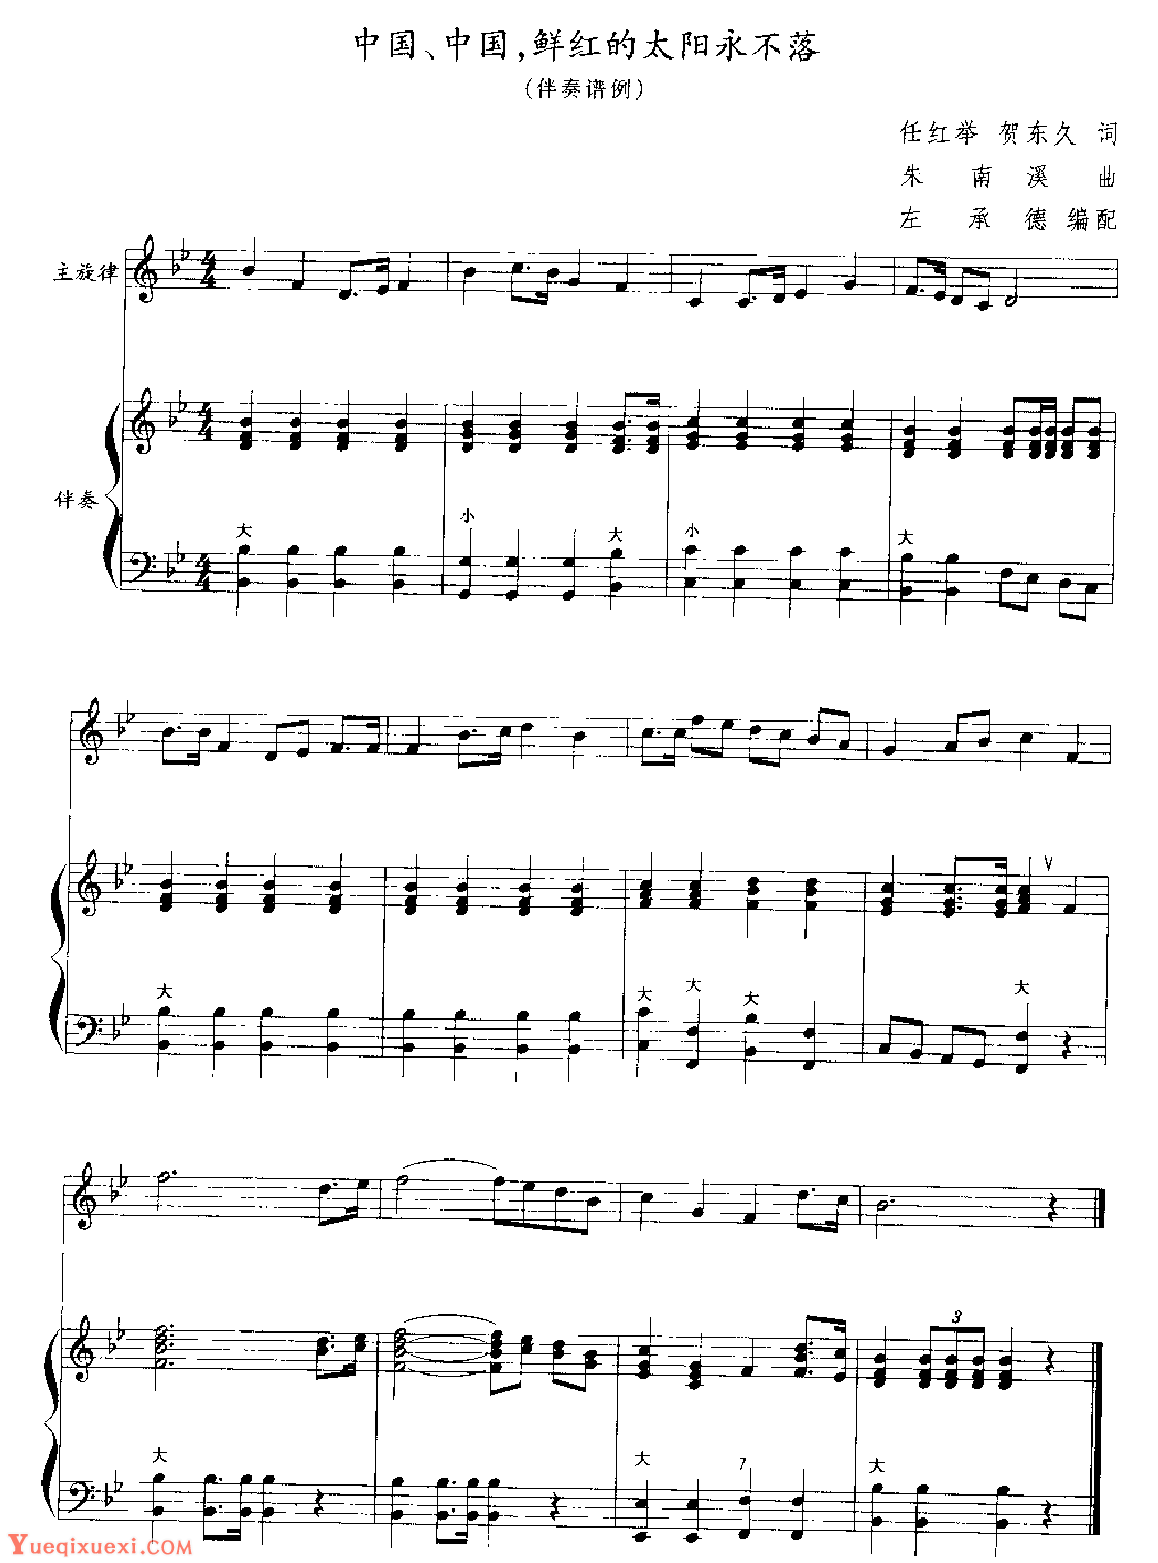 应掌握的几种手风琴伴奏类型4